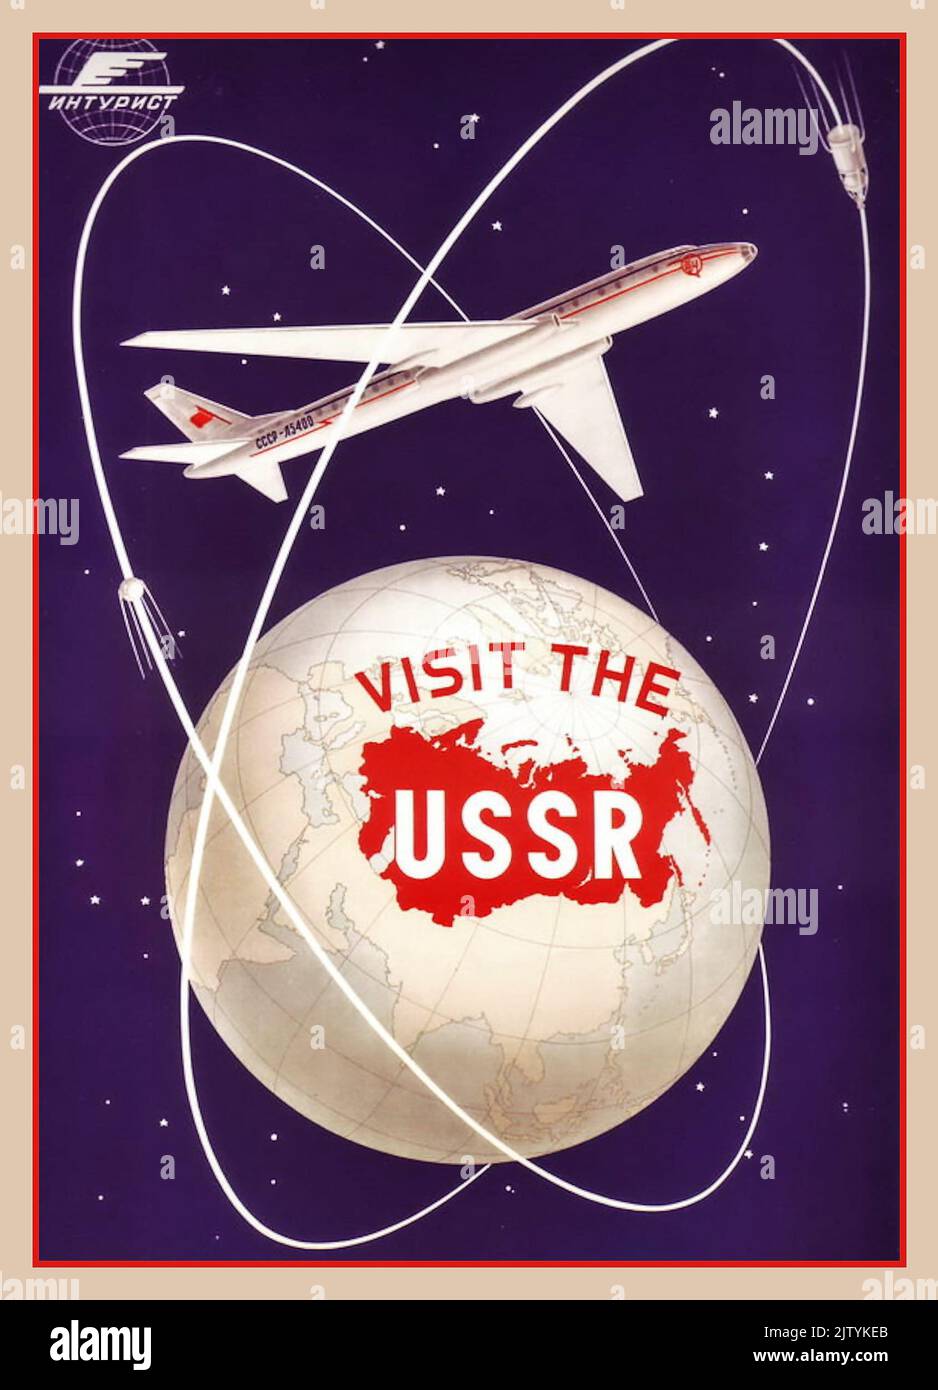 1950s Russian Travel Poster 'Visit the URSS' avec un avion russe de la compagnie aérienne d'État Aeroflot et une fusée spatiale soviétique qui encerclent la terre CCCP Russie Union soviétique Banque D'Images